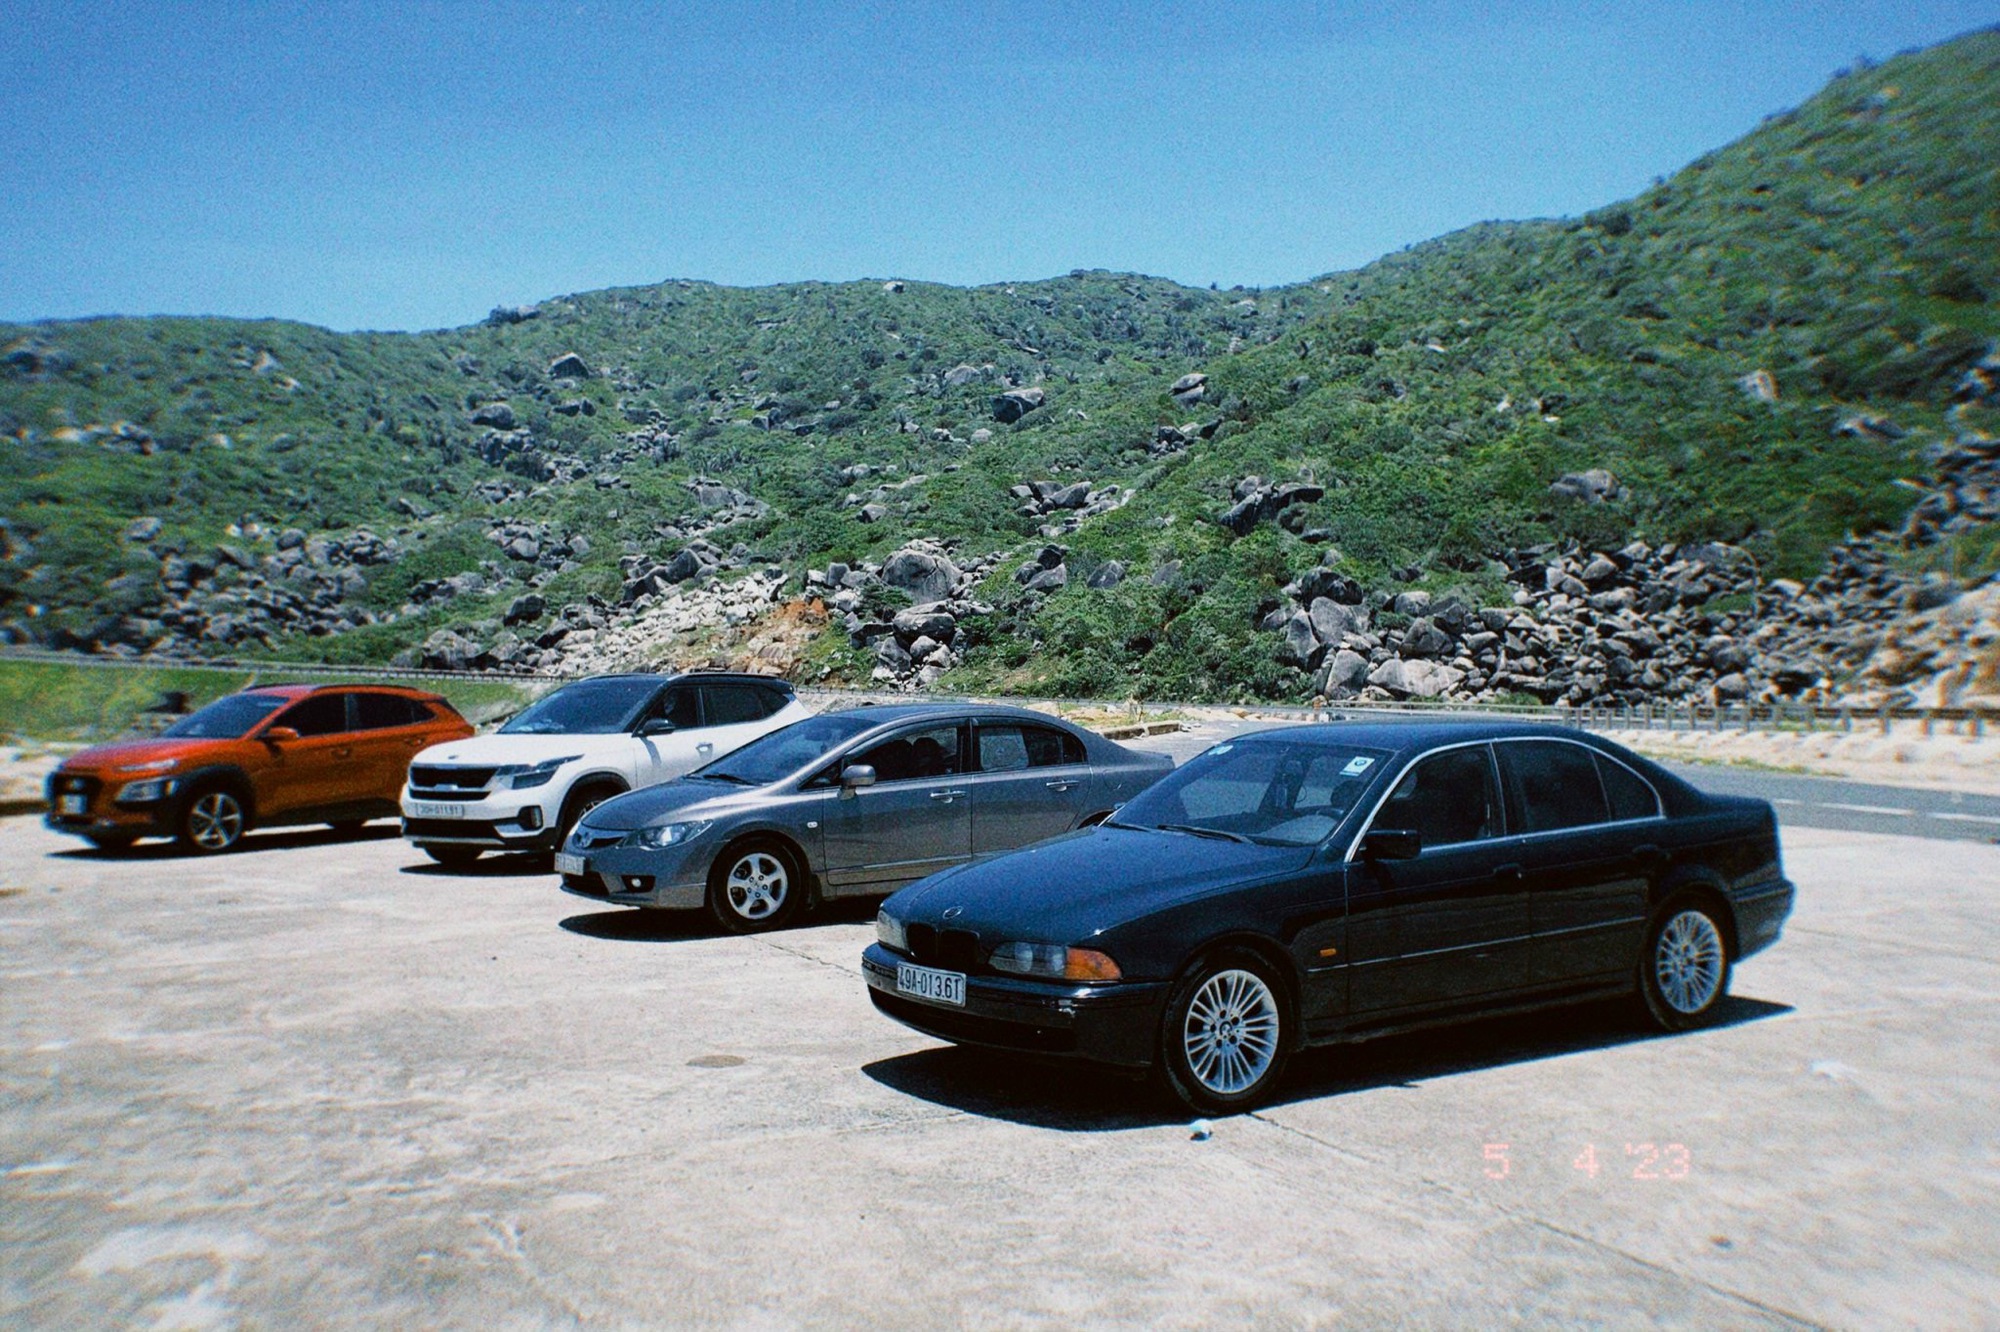 ‘Tay mơ’ đánh liều mua BMW 5-Series giá 150 triệu: ‘Không thành thợ sẽ bị thợ garage vật’ - ảnh 8